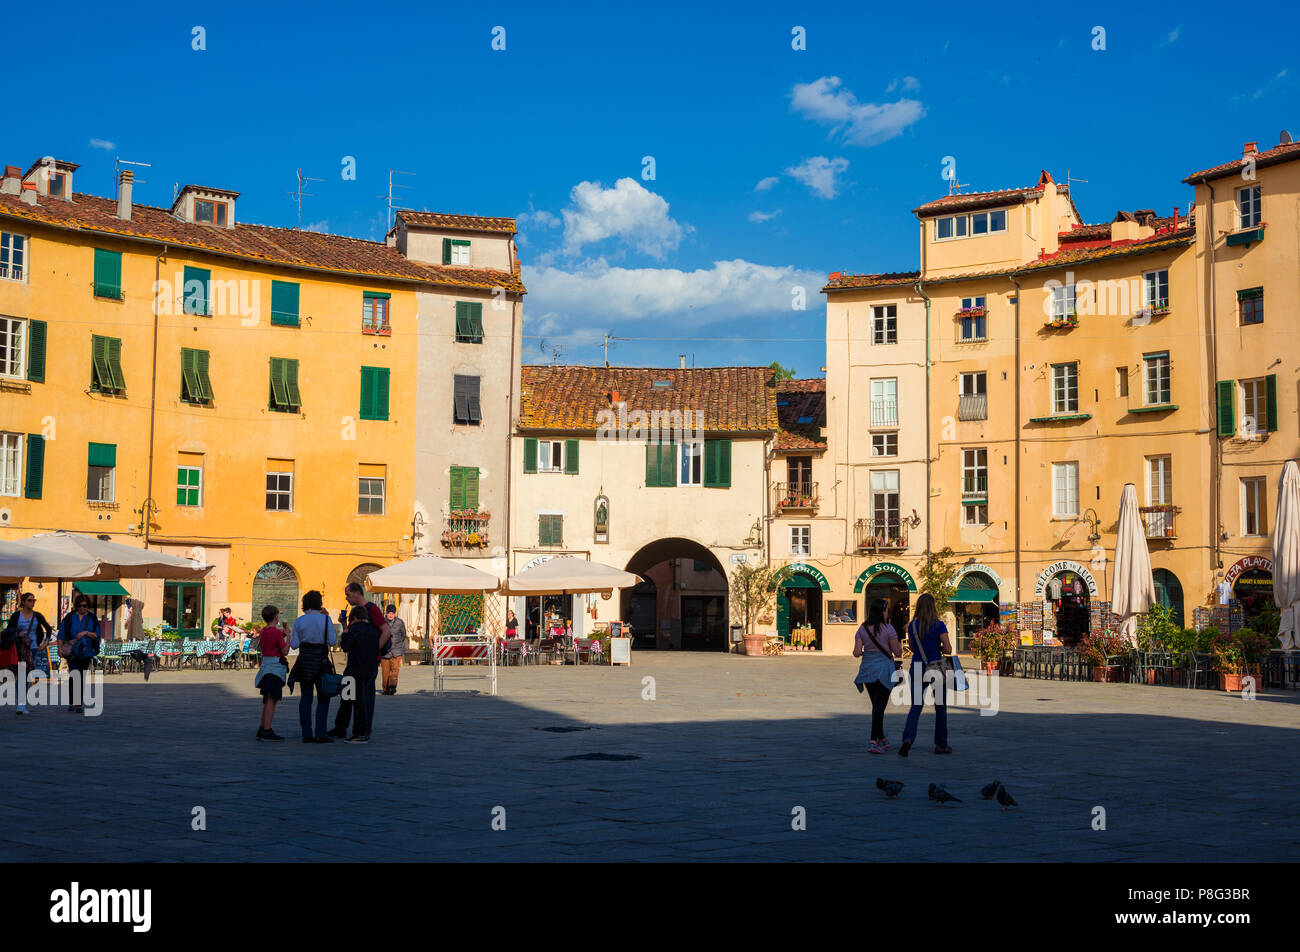 Der berühmten Piazza dell'Anfiteatro (Amphitheater Platz) im historischen Zentrum von Lucca, mit Häusern, die über antike römische Arena Ruinen erbaut Stockfoto